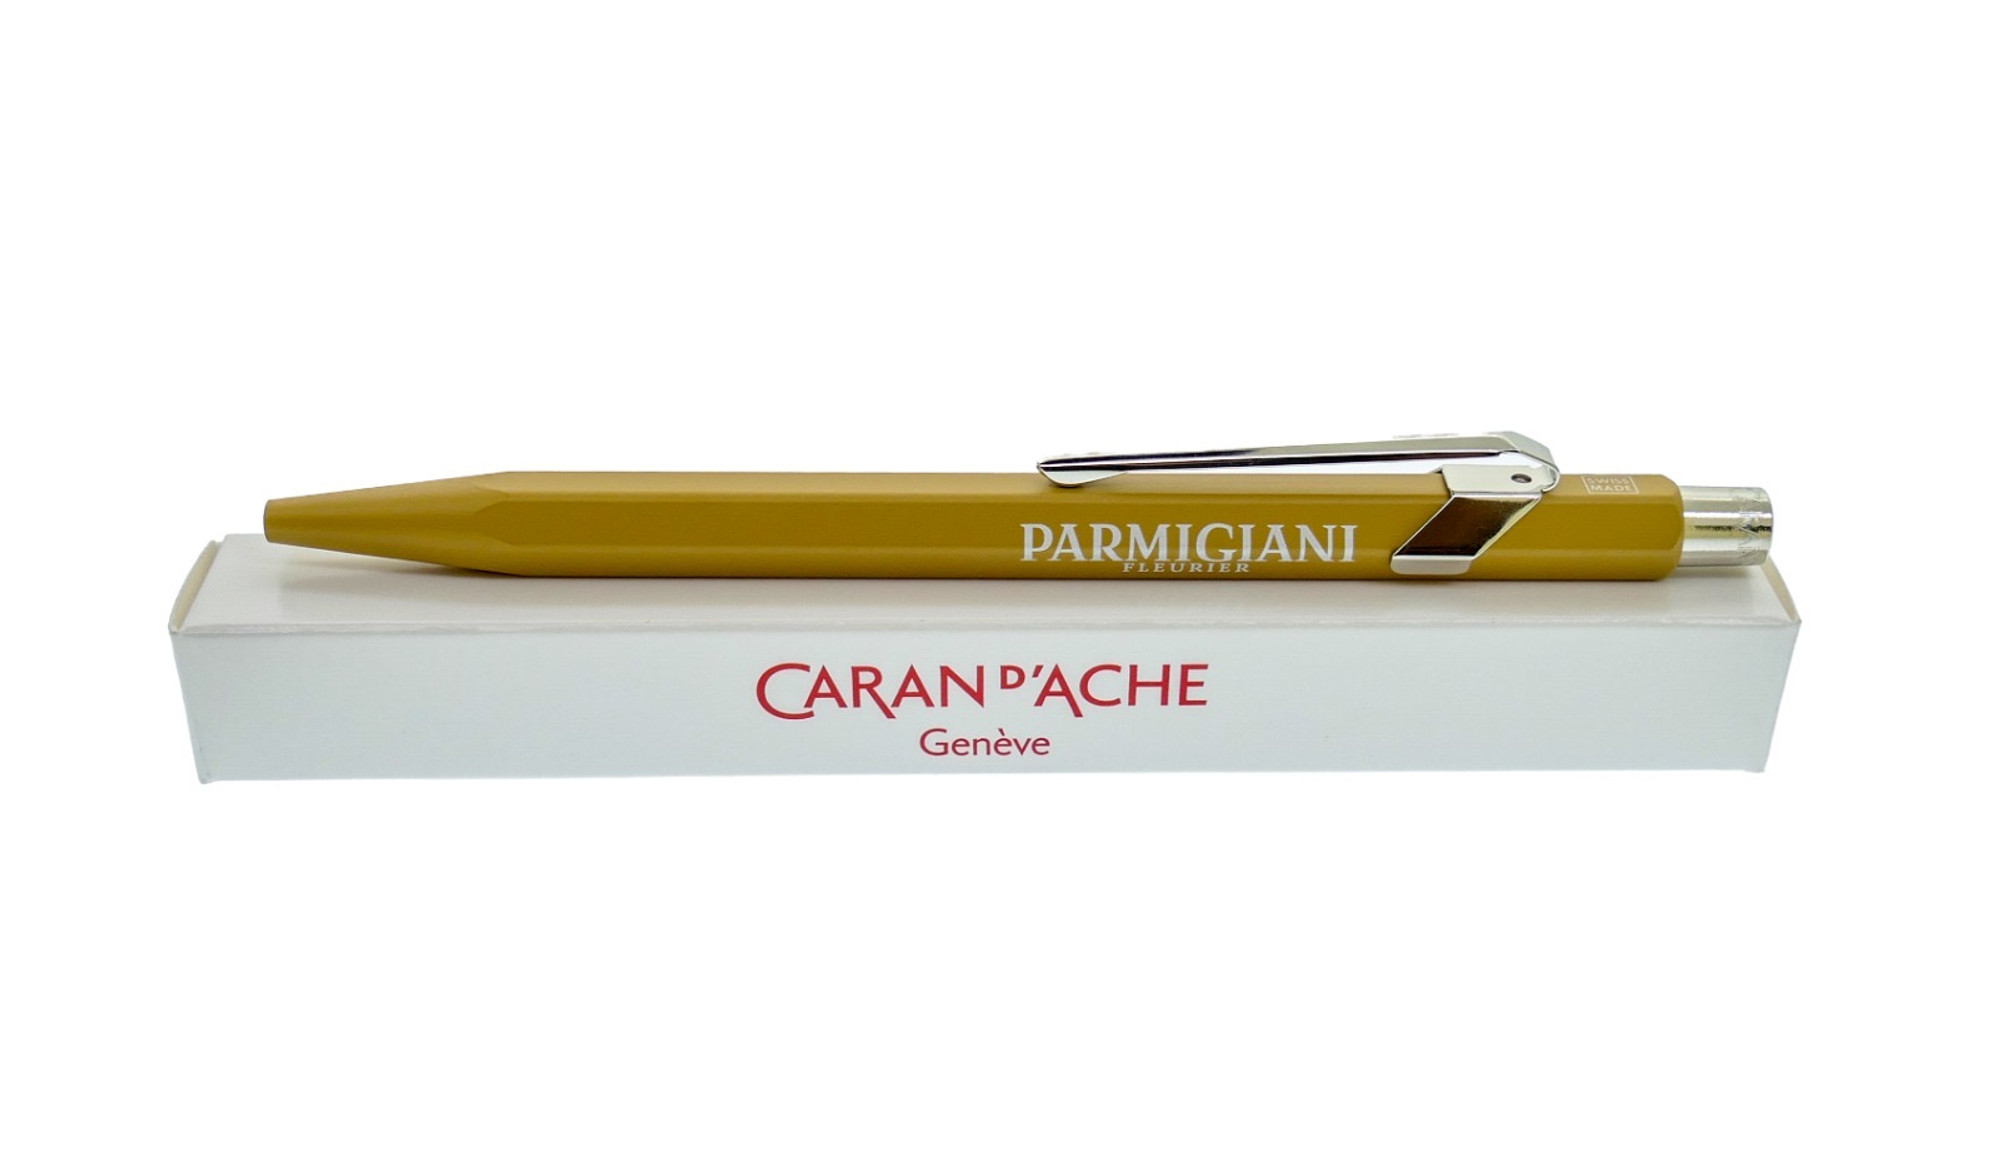 Parmigiani Ballpoint Pen by Caran D'Ache